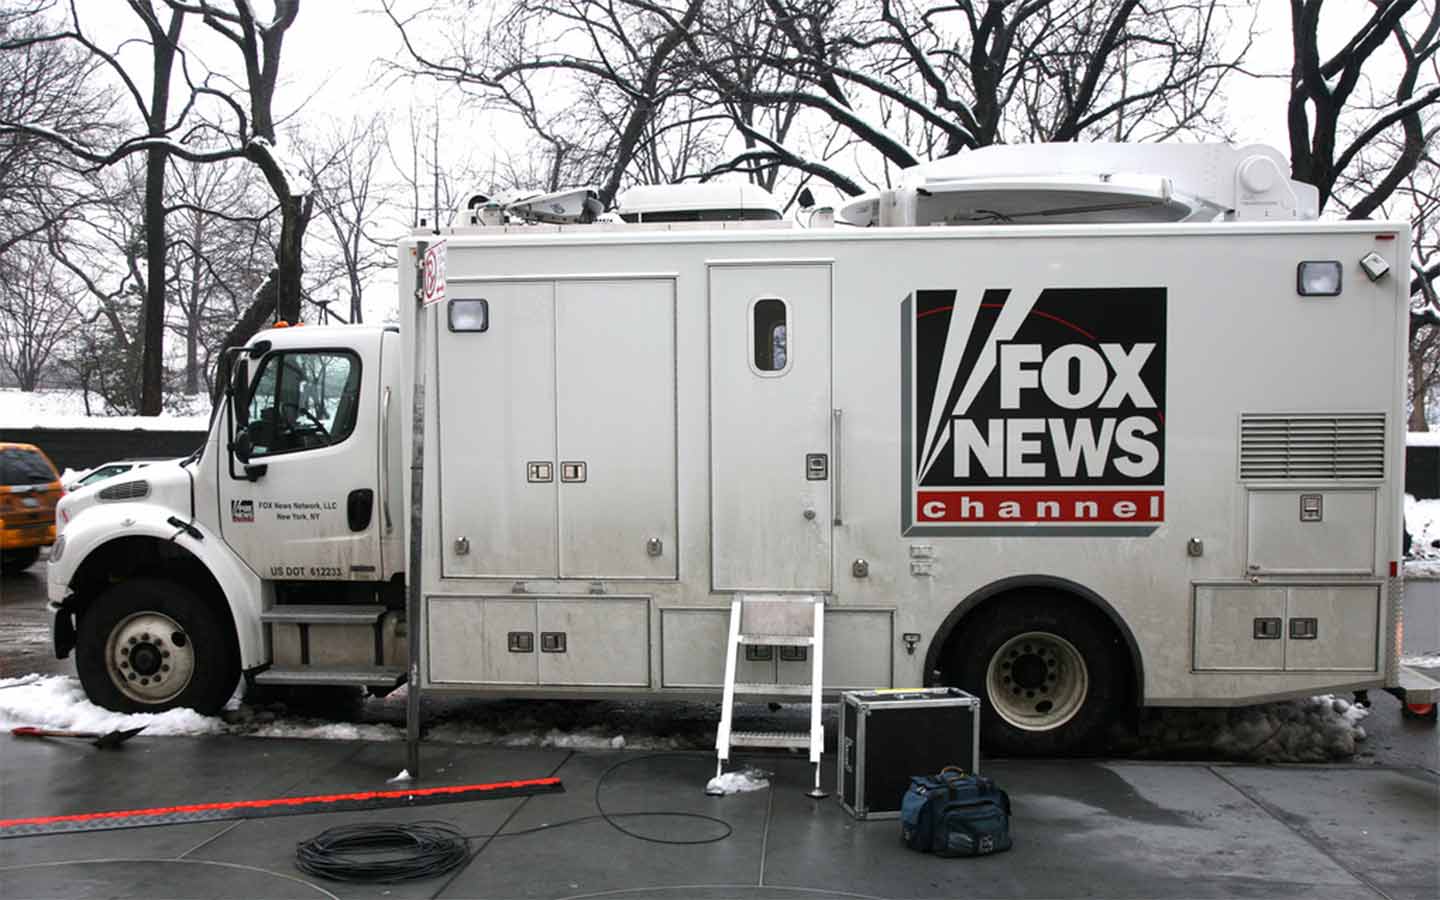 Fox News truck